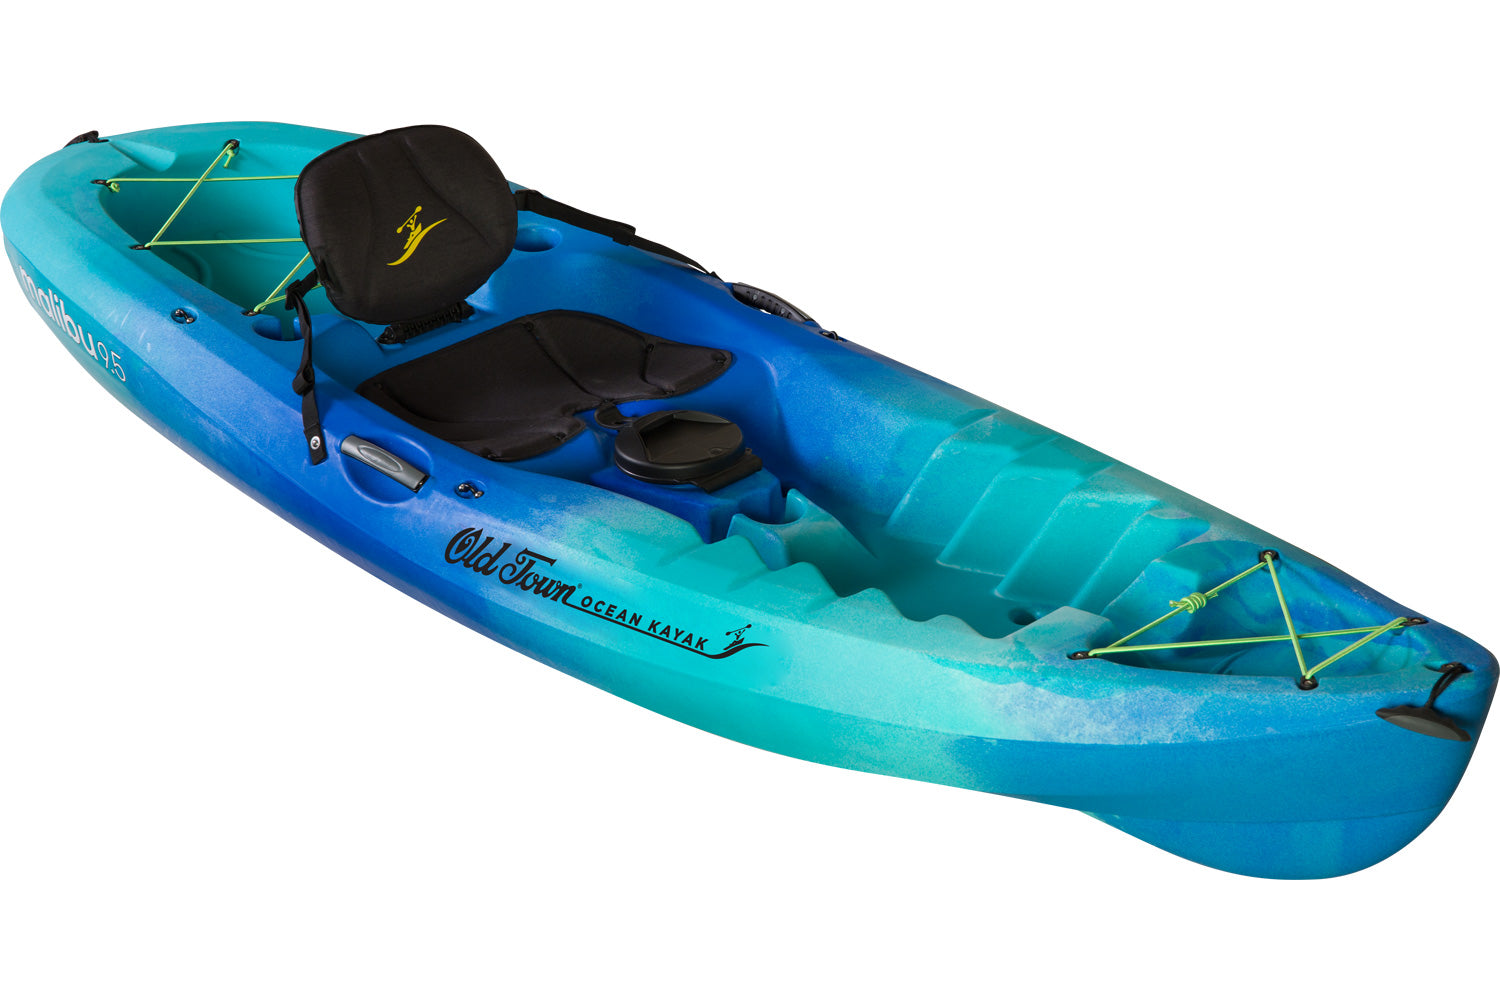 Seaglass (blue/lighter blue) mixed colour scheme of the 9.5 Malibu Ocean Kayak